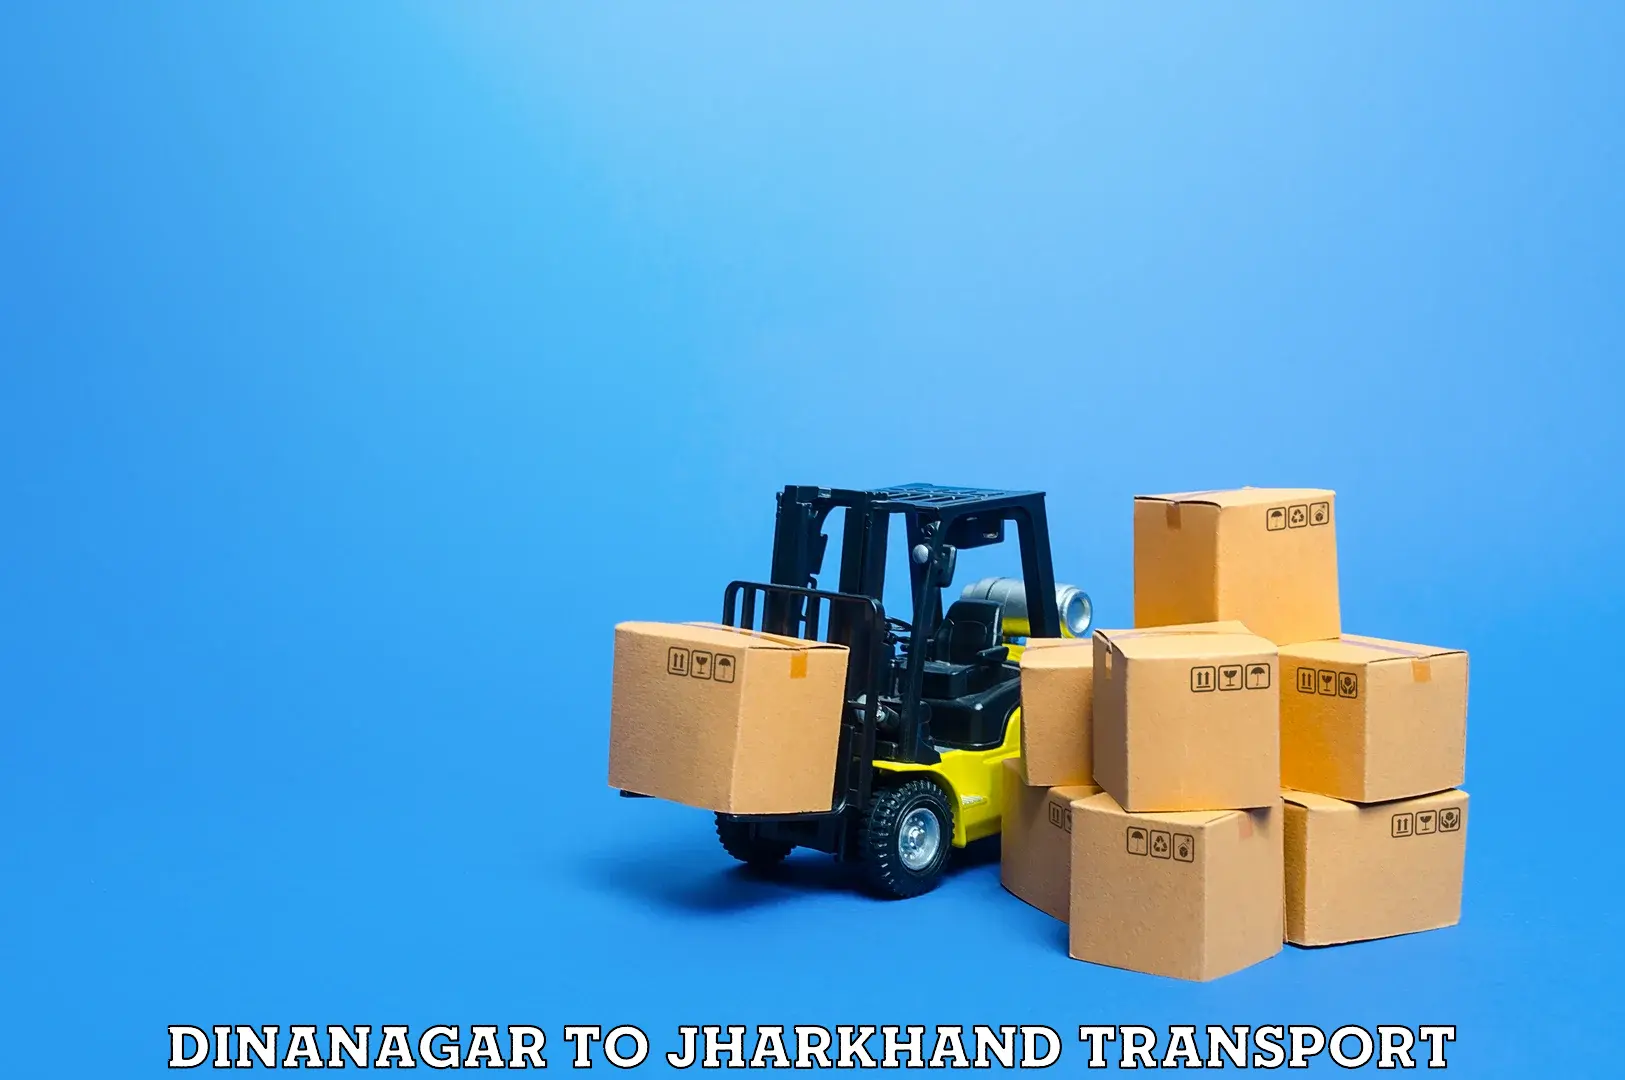 Truck transport companies in India Dinanagar to Medininagar